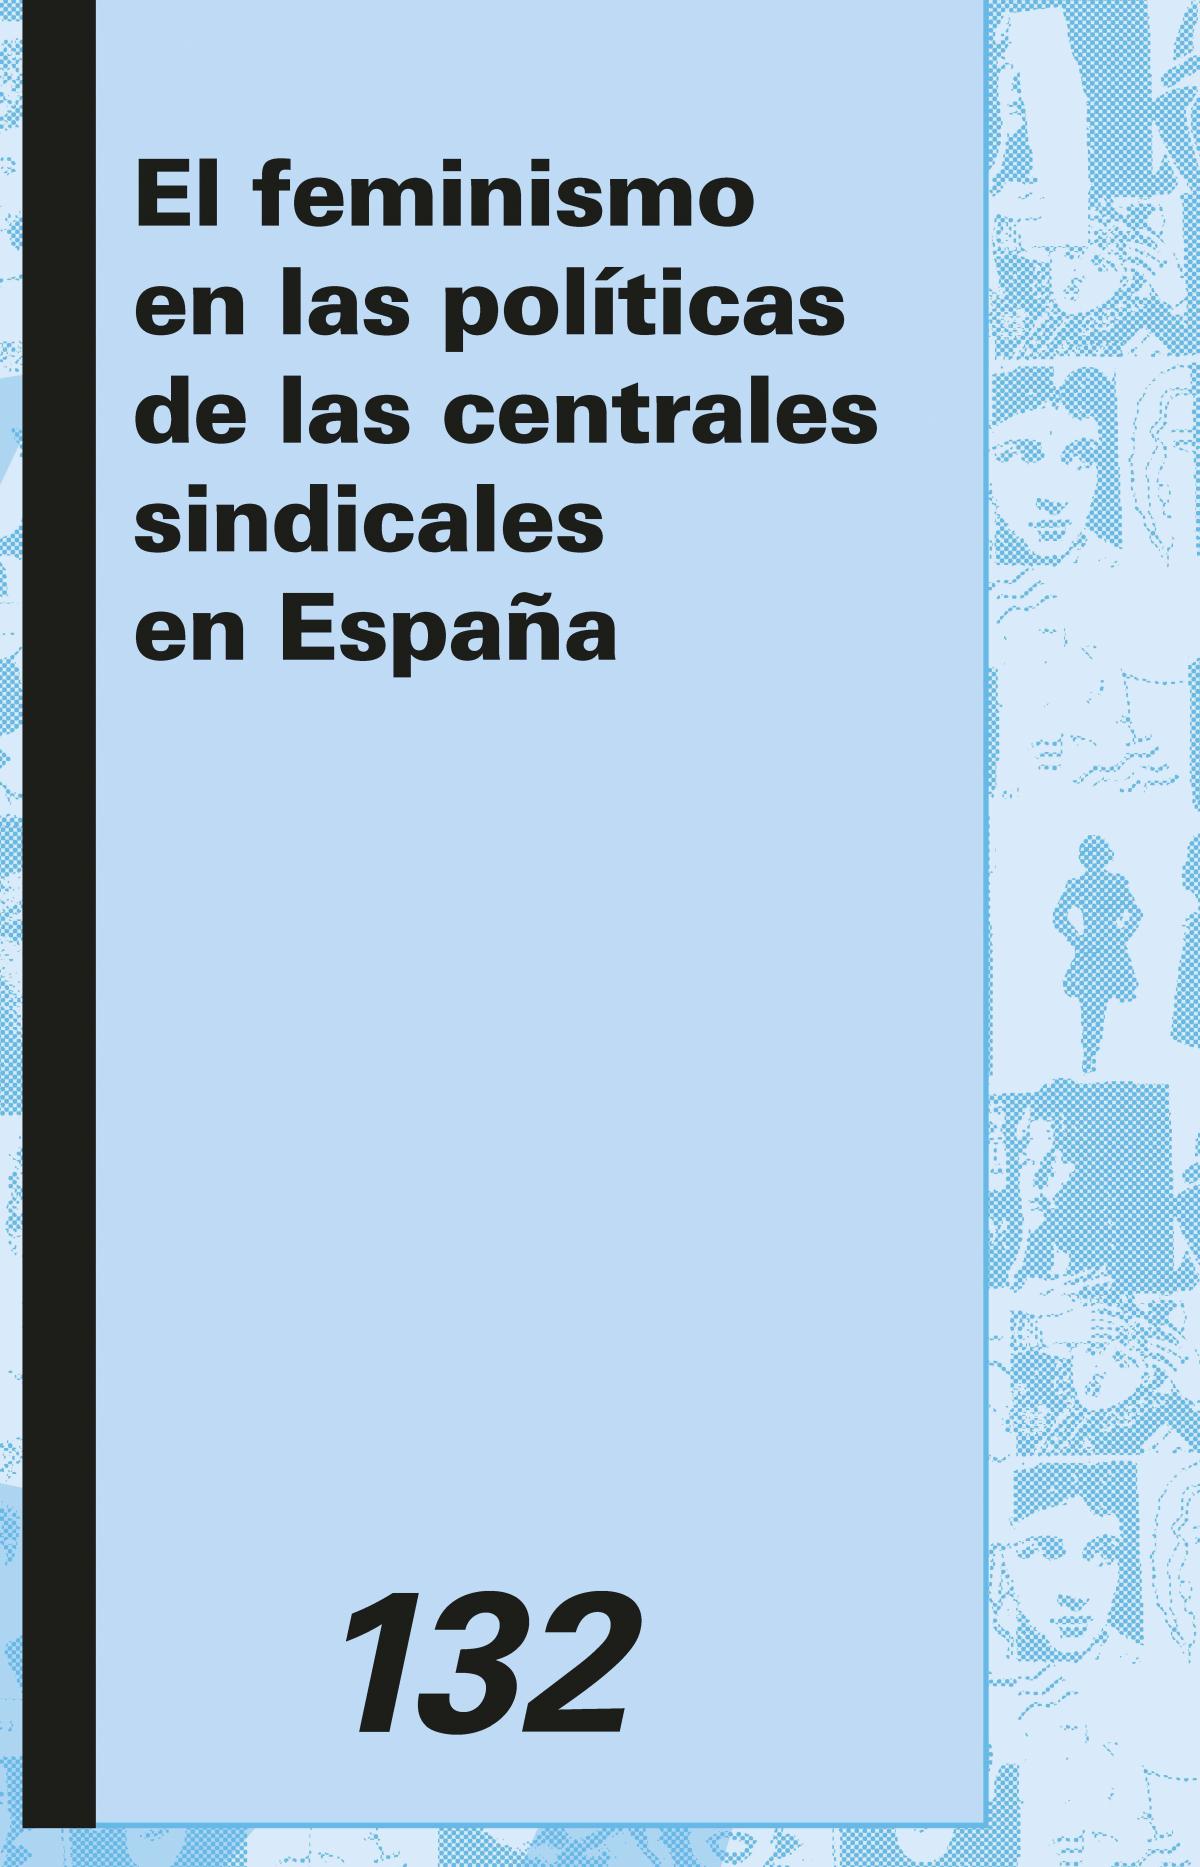 "El feminismo en las polticas de las centrales sindicales en Espaa, de Mayka Muoz, Eva Antn y Diana Garca.